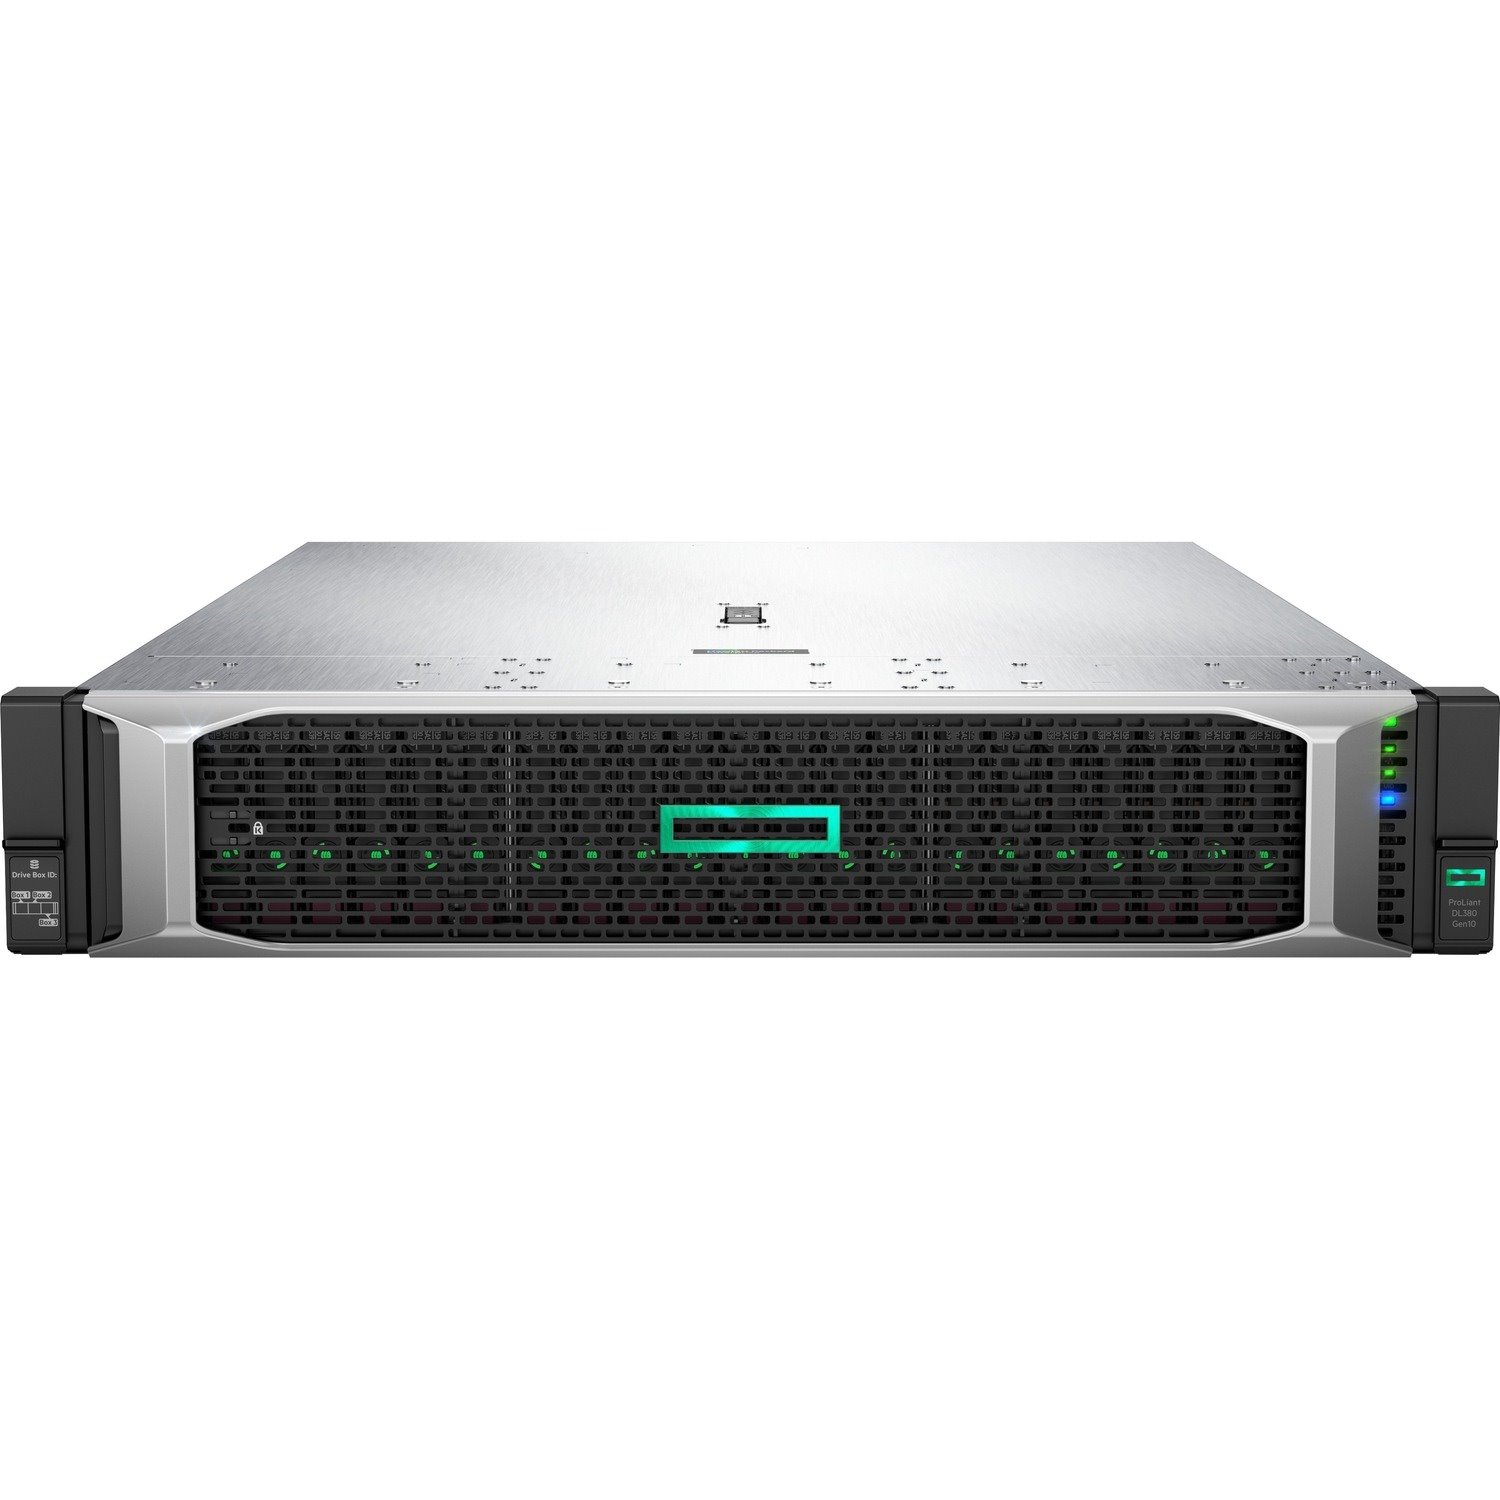 HPE ProLiant DL380 G10 2U Rack Server - 1 x Intel Xeon Silver 4215R 3.20 GHz - 32 GB RAM - Serial ATA, 12Gb/s SAS Controller